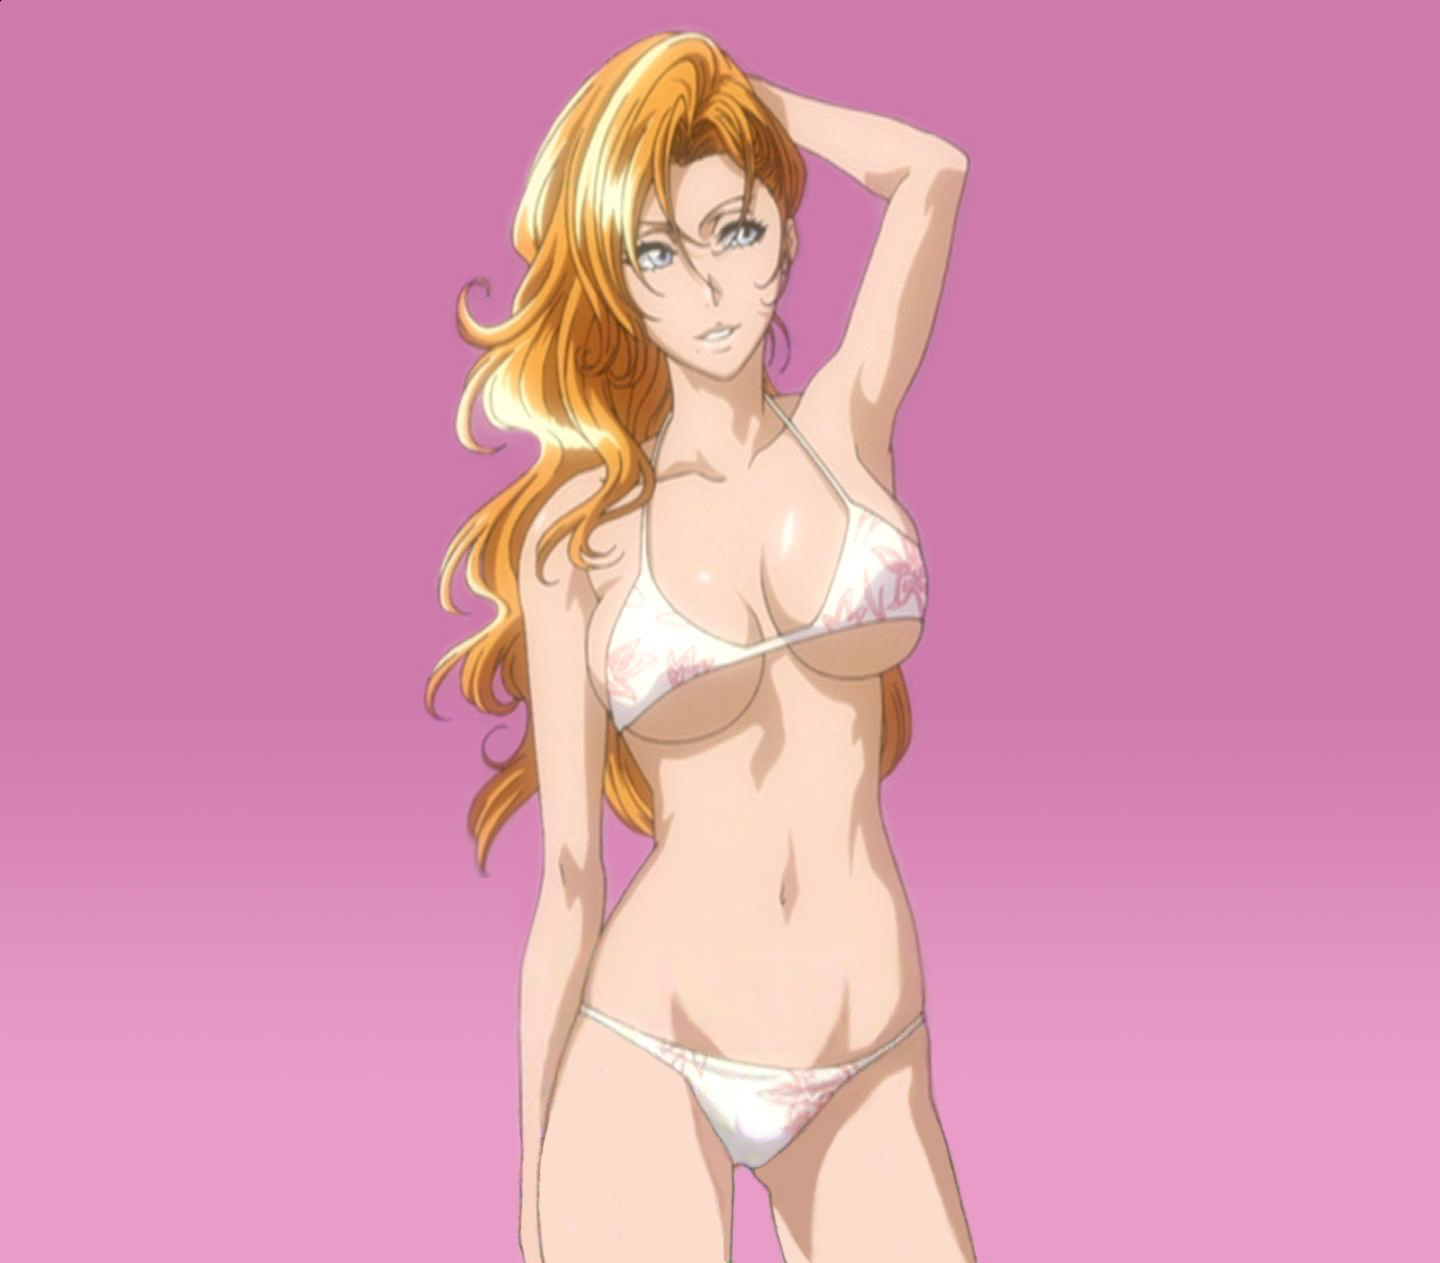 Sexy Rangiku. - Bleach Anime Photo (39427162) - Fanpop - Pag